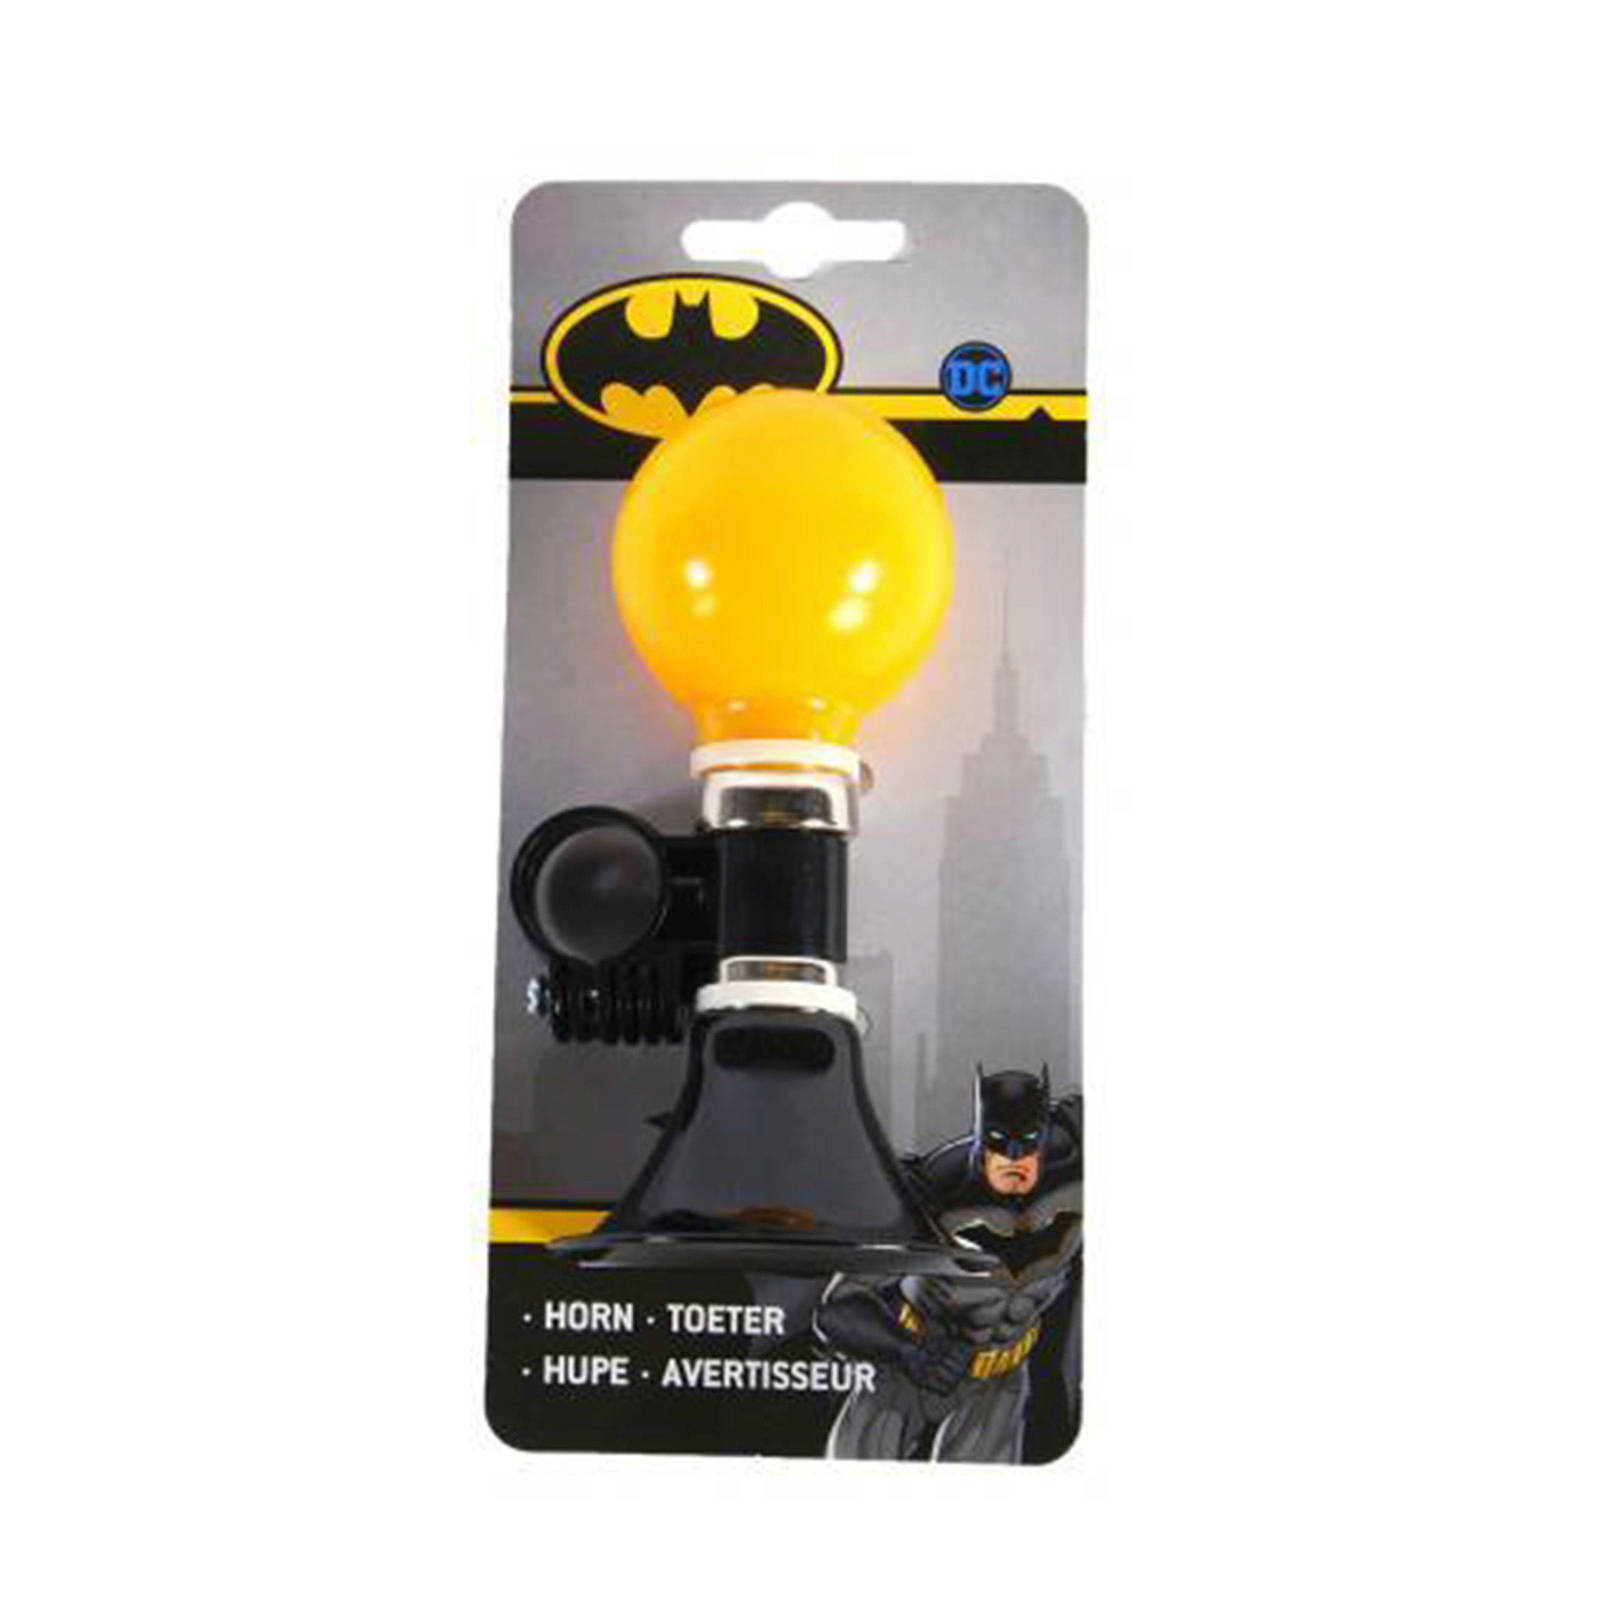 Volare Fietstoeter Batman 15 Cm Geel/zwart online kopen